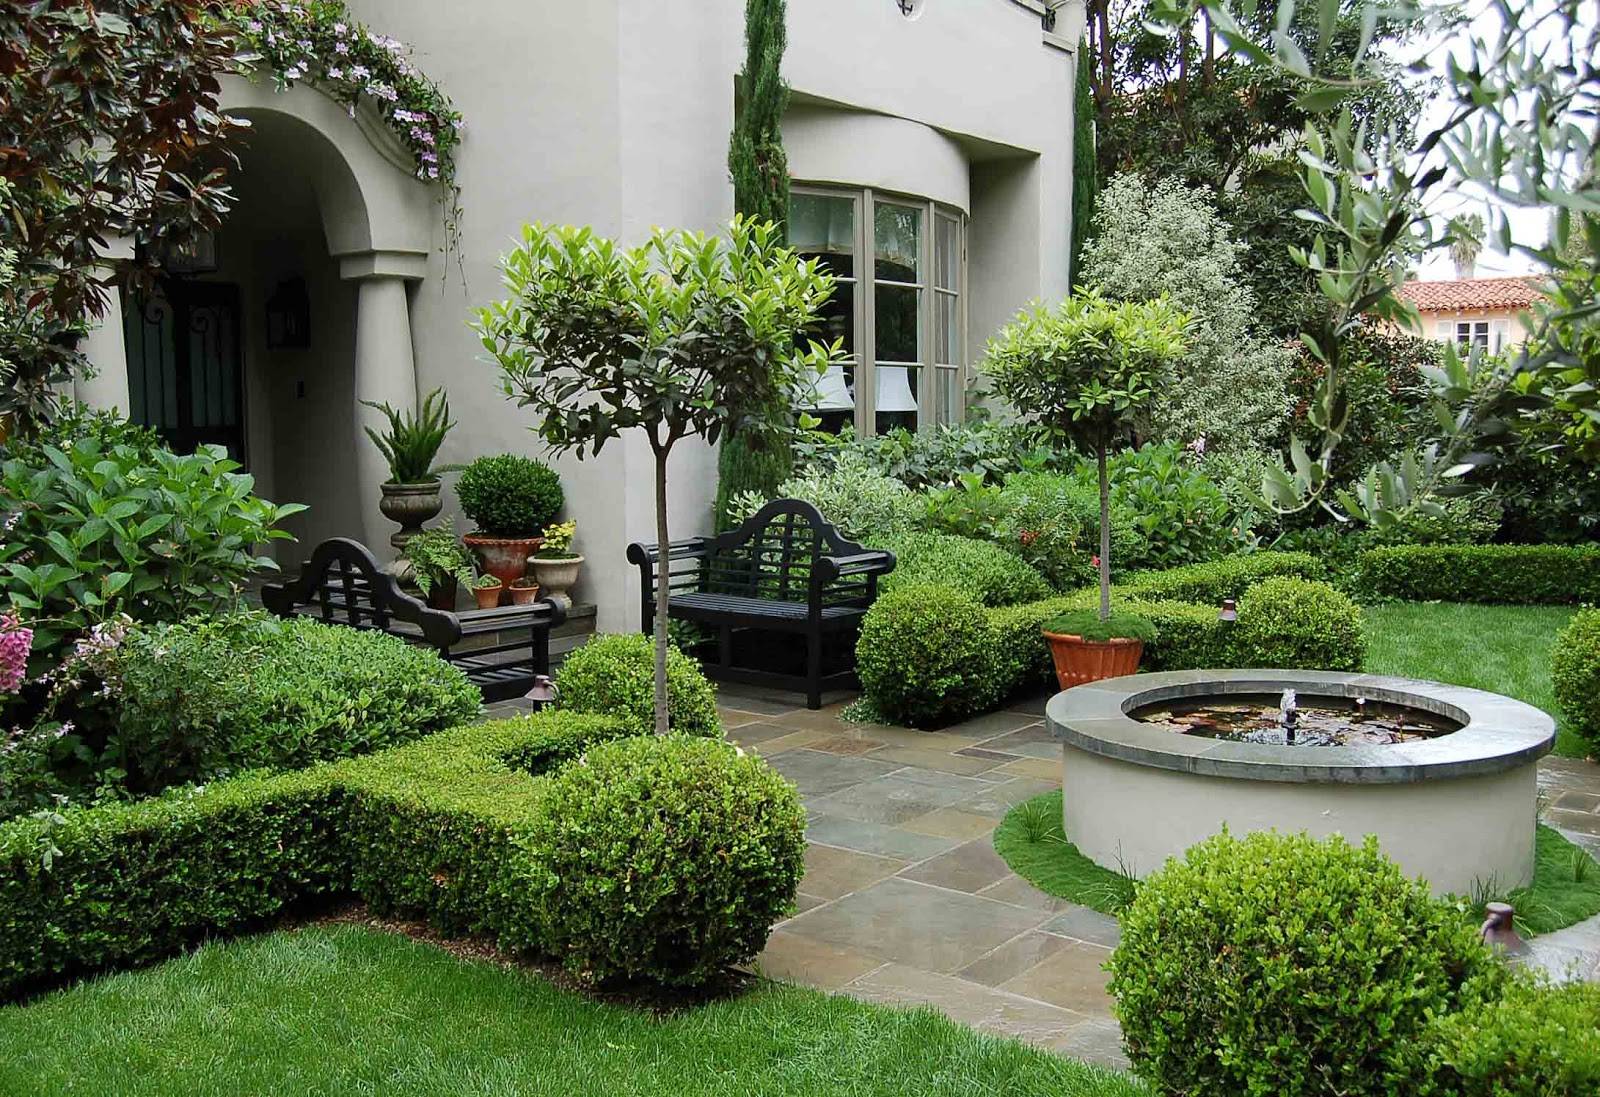 Luxury Modern House Garden Design